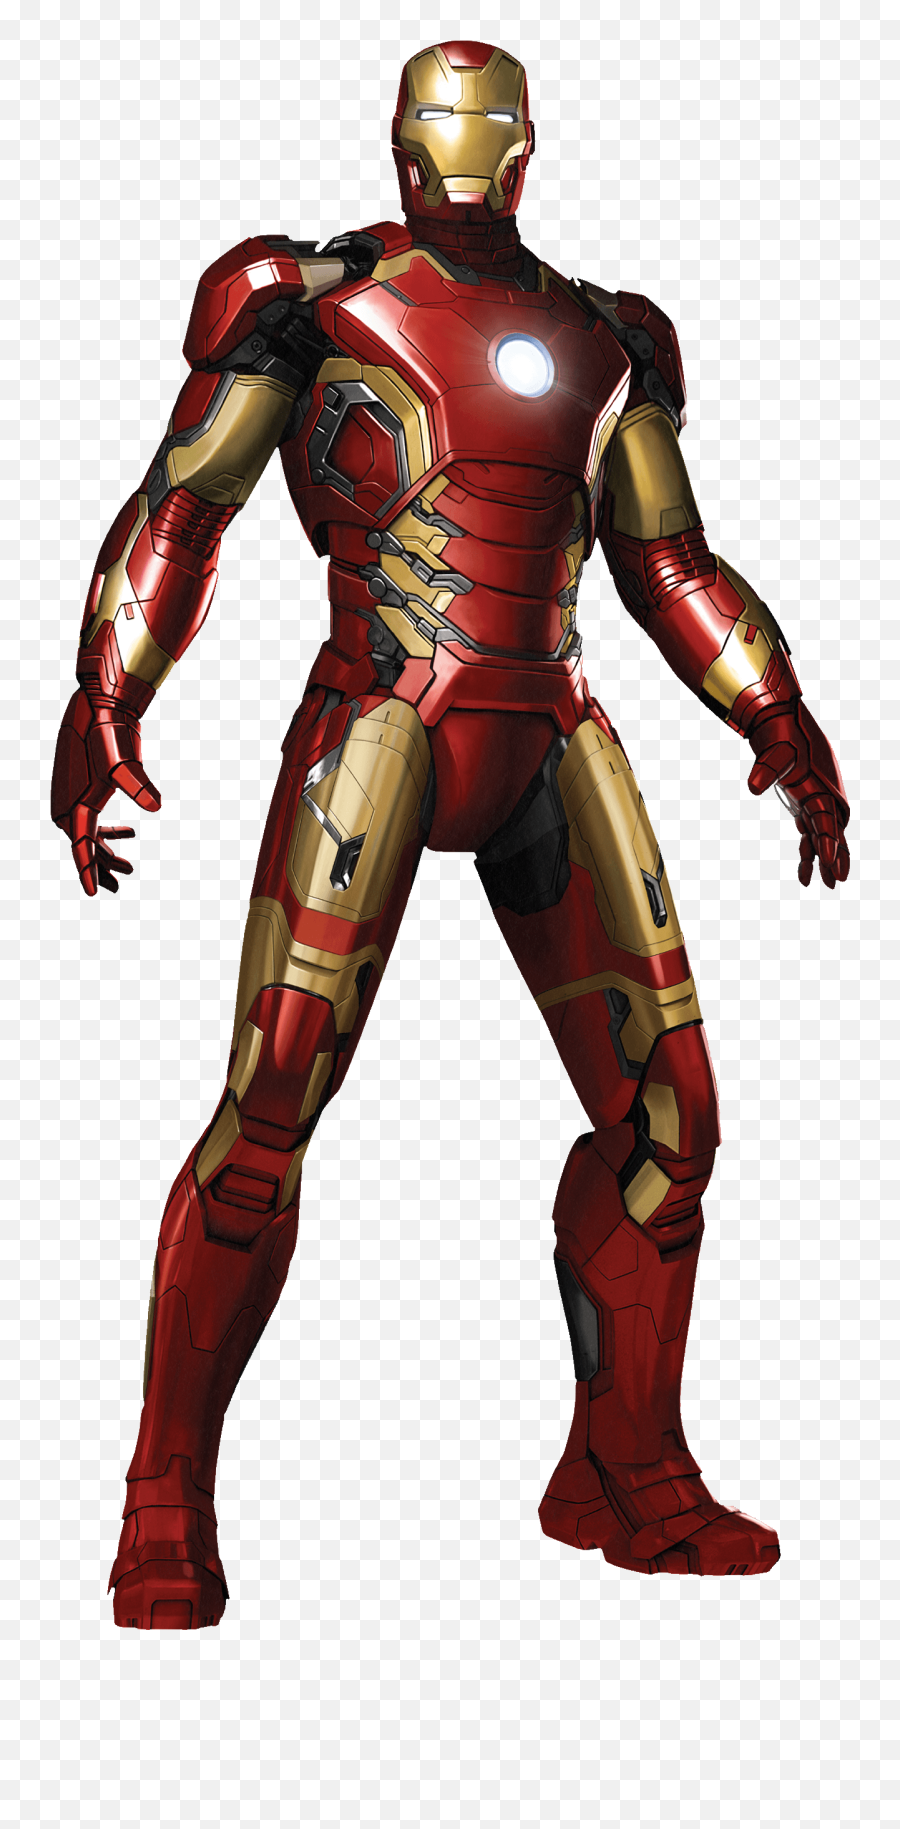 Iron Man Mdot Emoji,Deadpool Emoji